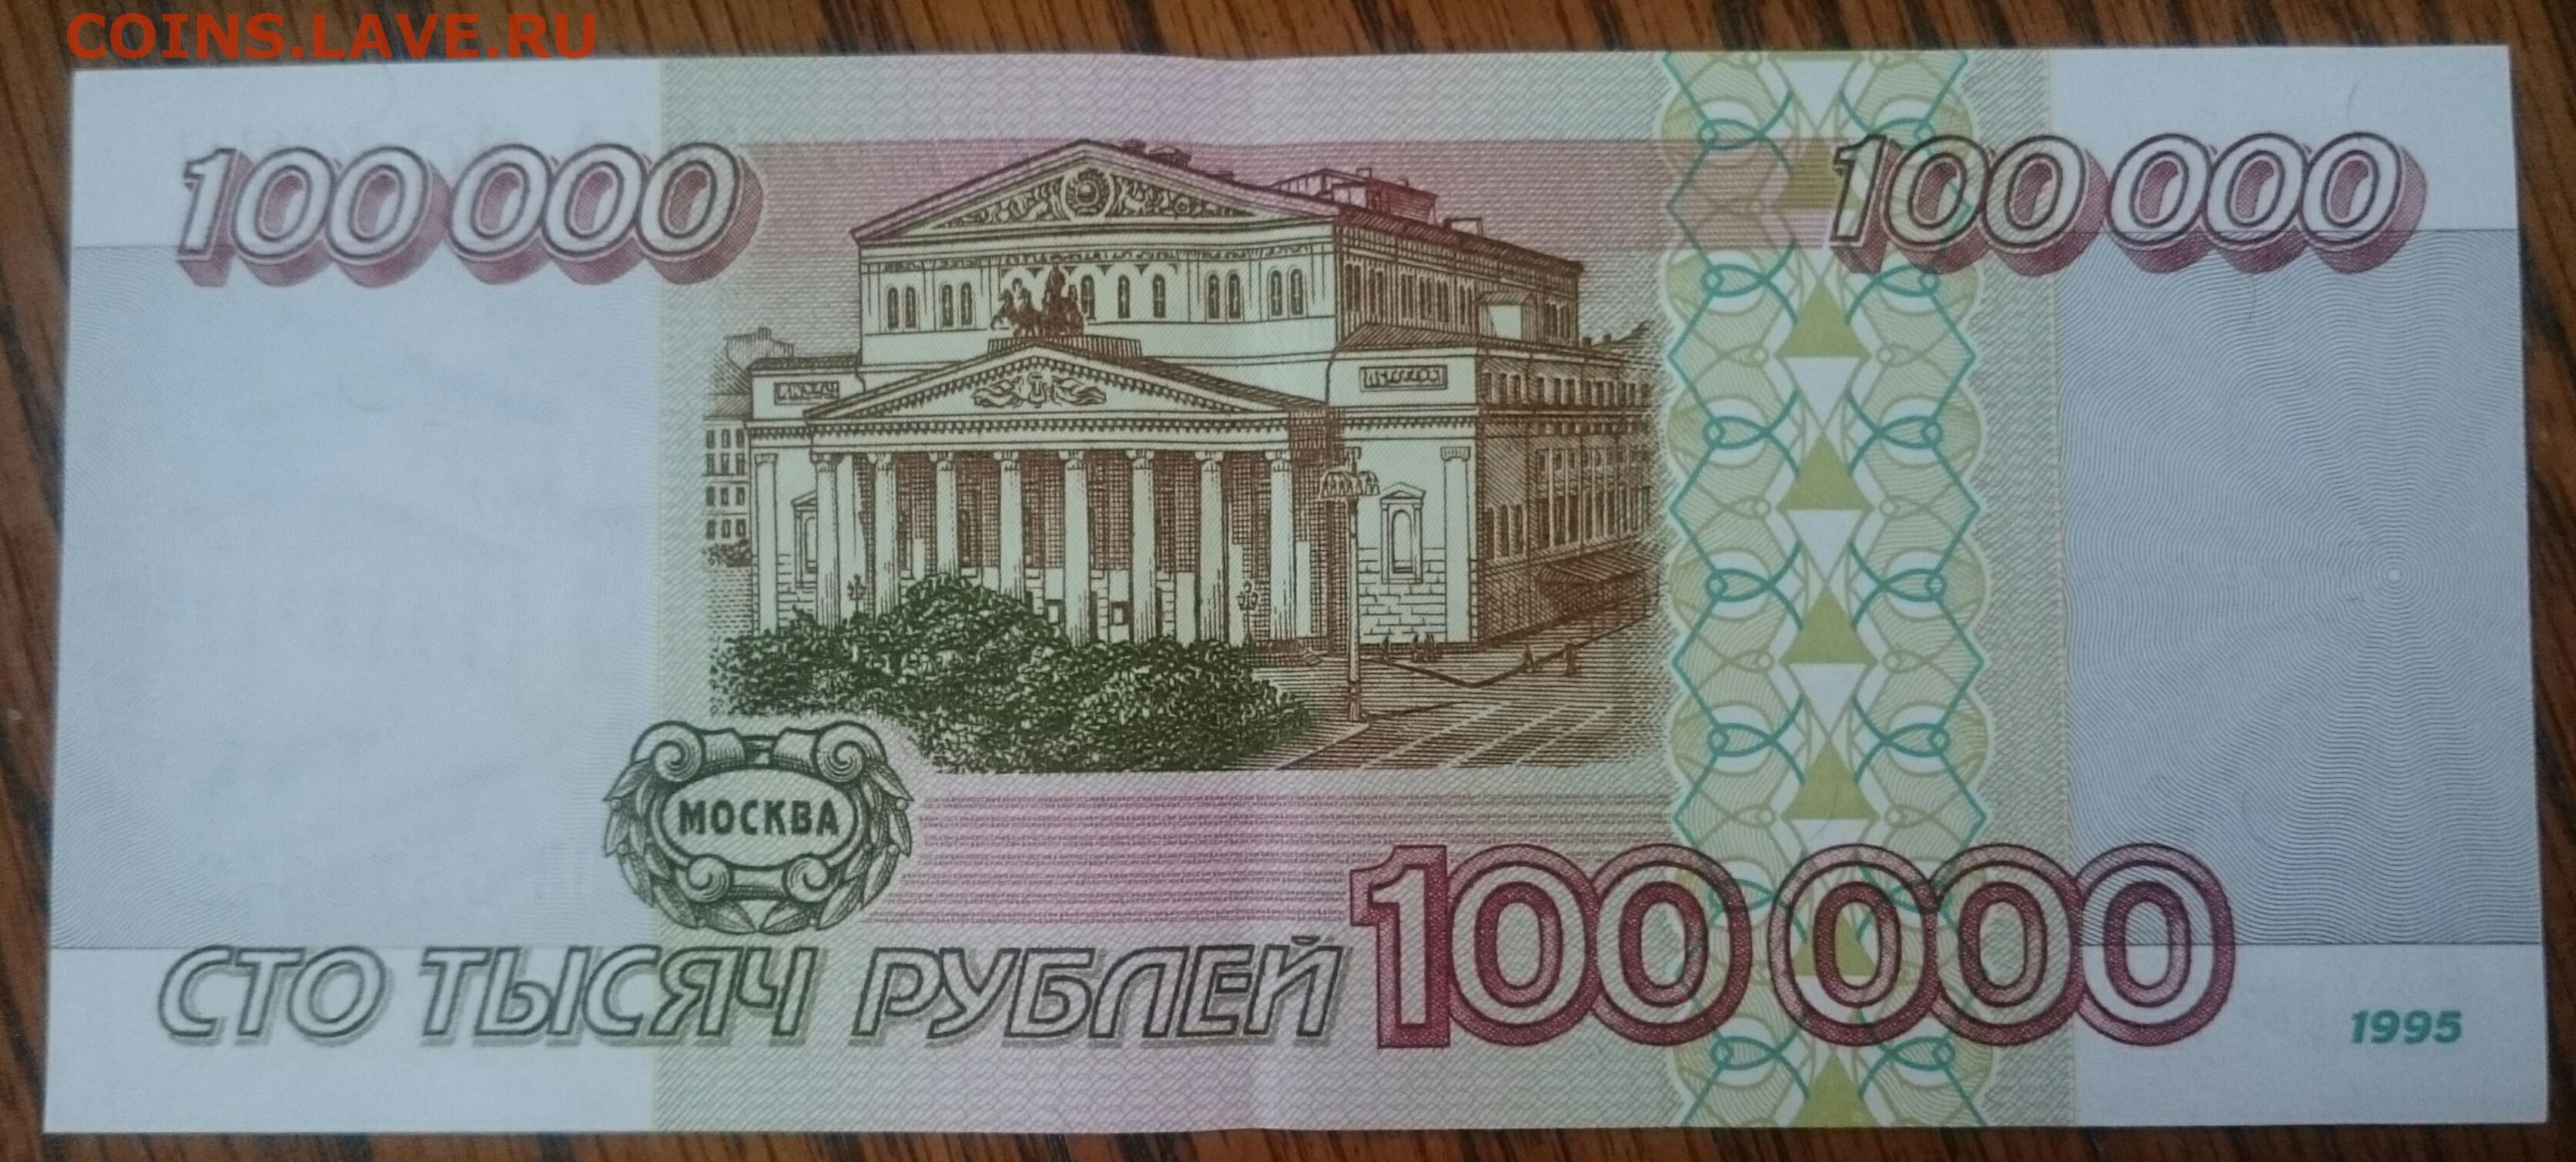 100.000 000. 100 000 Рублей 1995 года. 100 Рублей 1995 года. Картинка 100 000 рублей. 100 000 Рублей купюра.